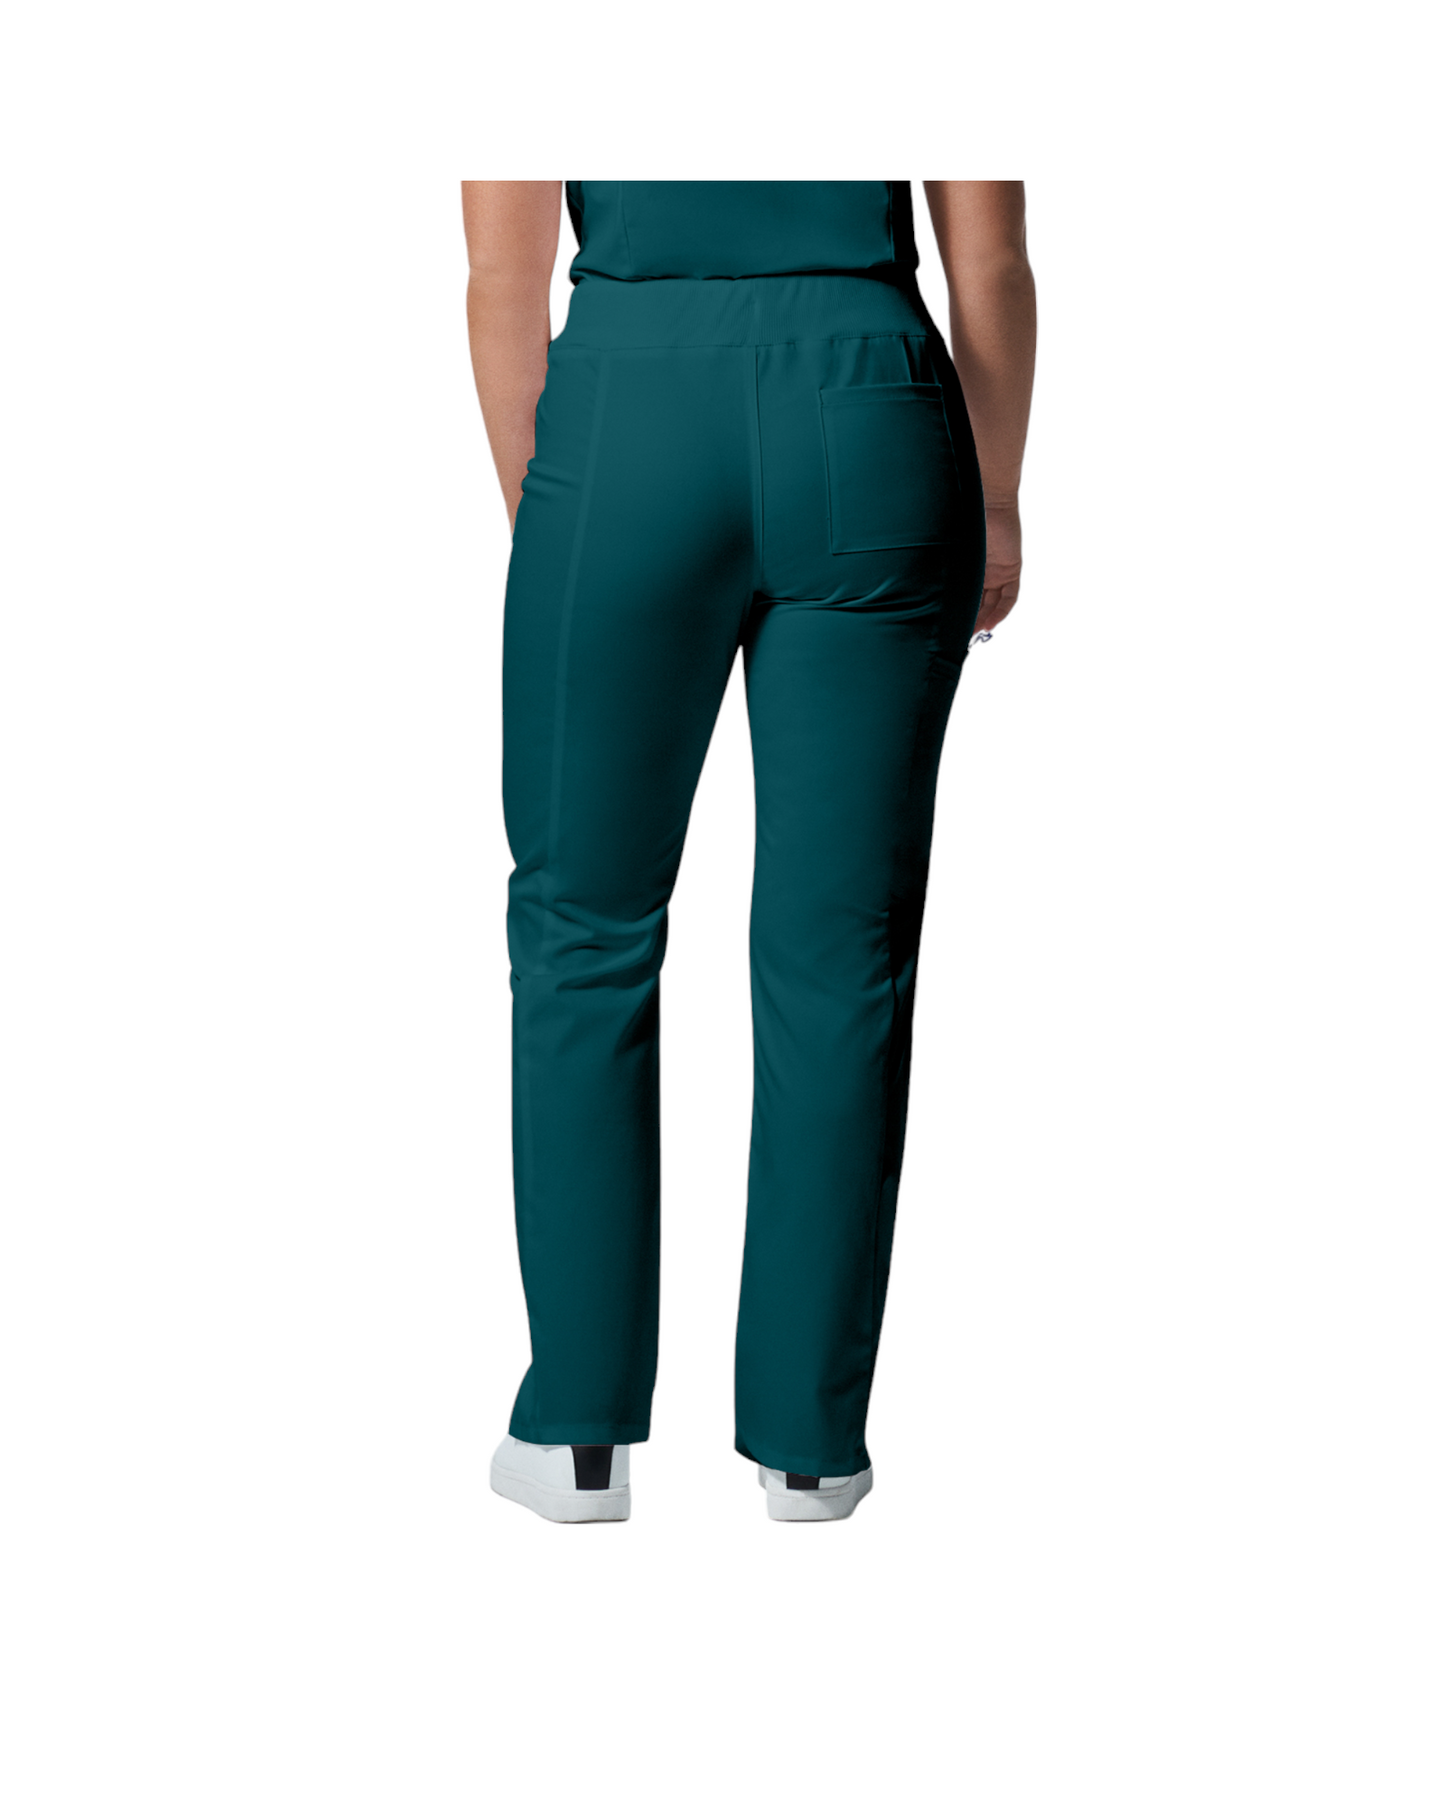 Pantalons 6 poches pour femmes Landau Proflex #LB405 OS vue de dos couleur Caraïbes